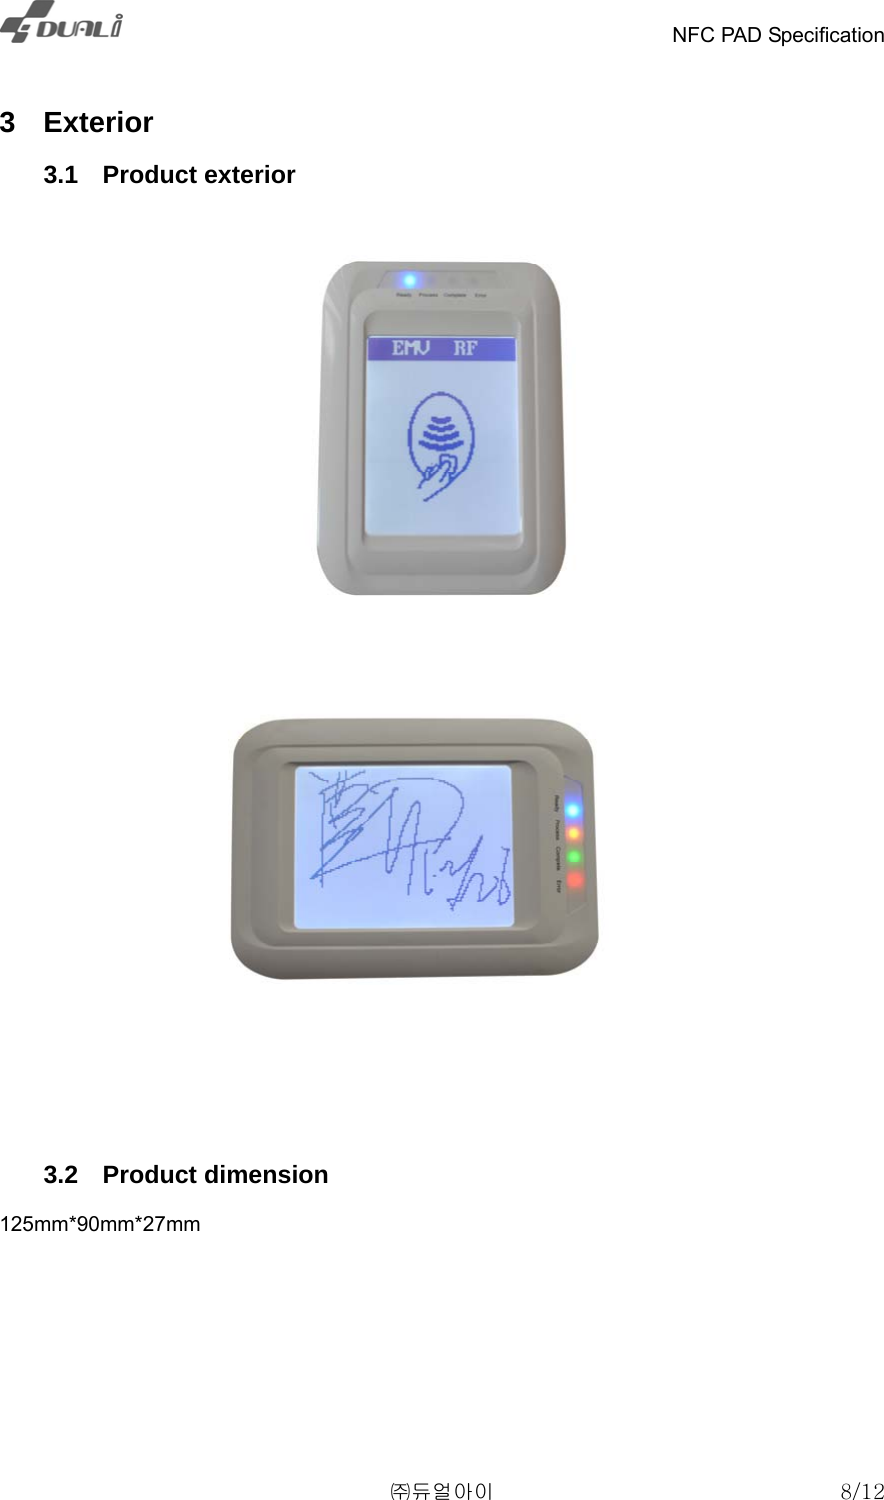    NFC PAD Specification   ㈜듀얼아이  8/12  3 Exterior  3.1 Product exterior    3.2 Product dimension 125mm*90mm*27mm 